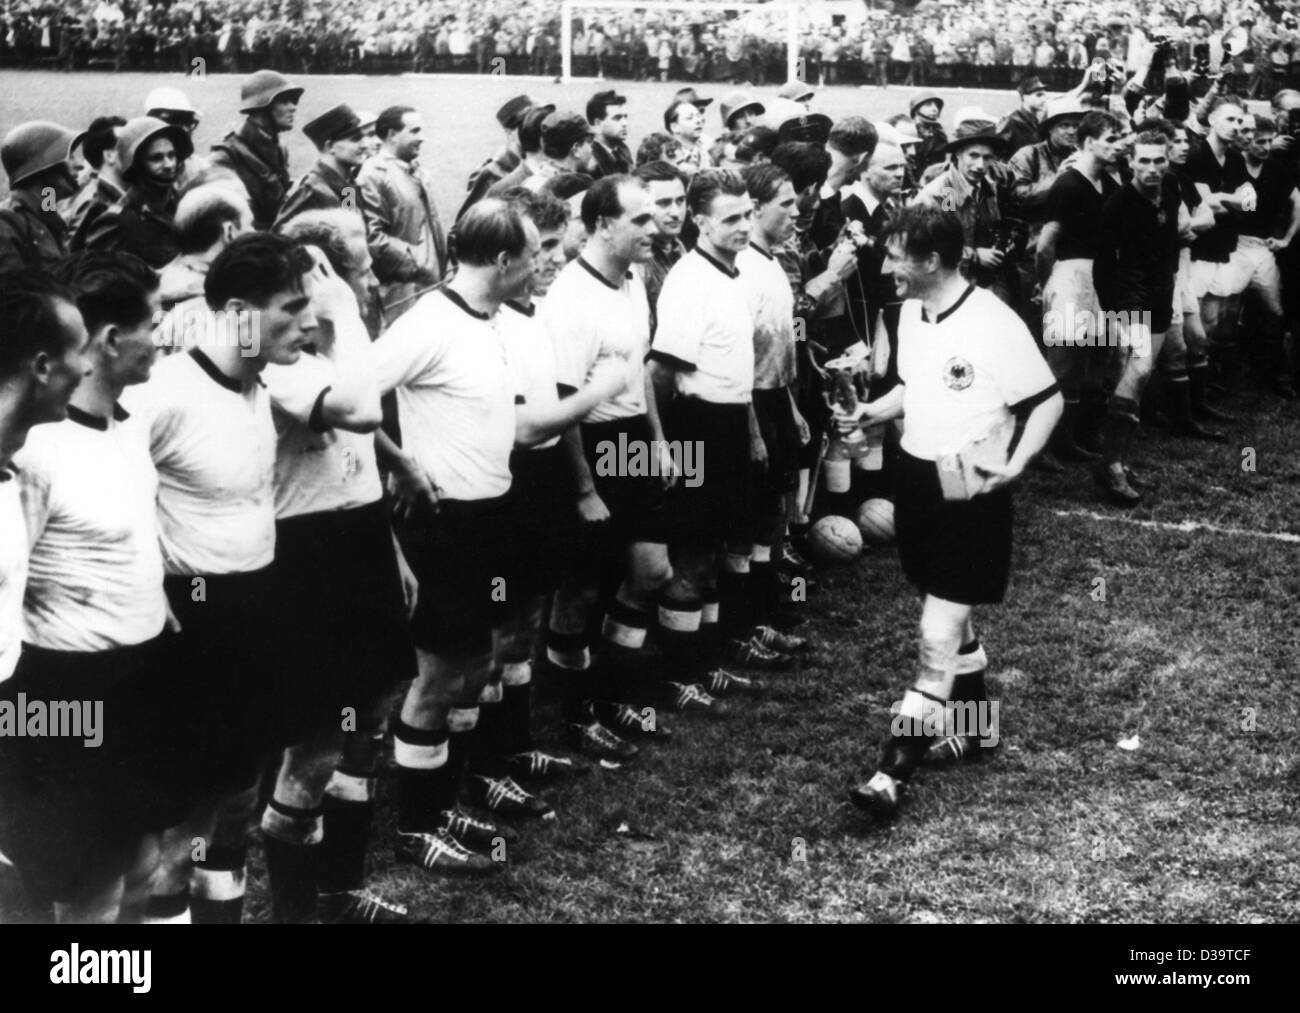 Dpa file) - Fritz Walter, capitano della squadra di calcio tedesco team,  mostra la Coppa del mondo trofeo per i suoi compagni di squadra dopo il  team tedesco ha vinto la partita